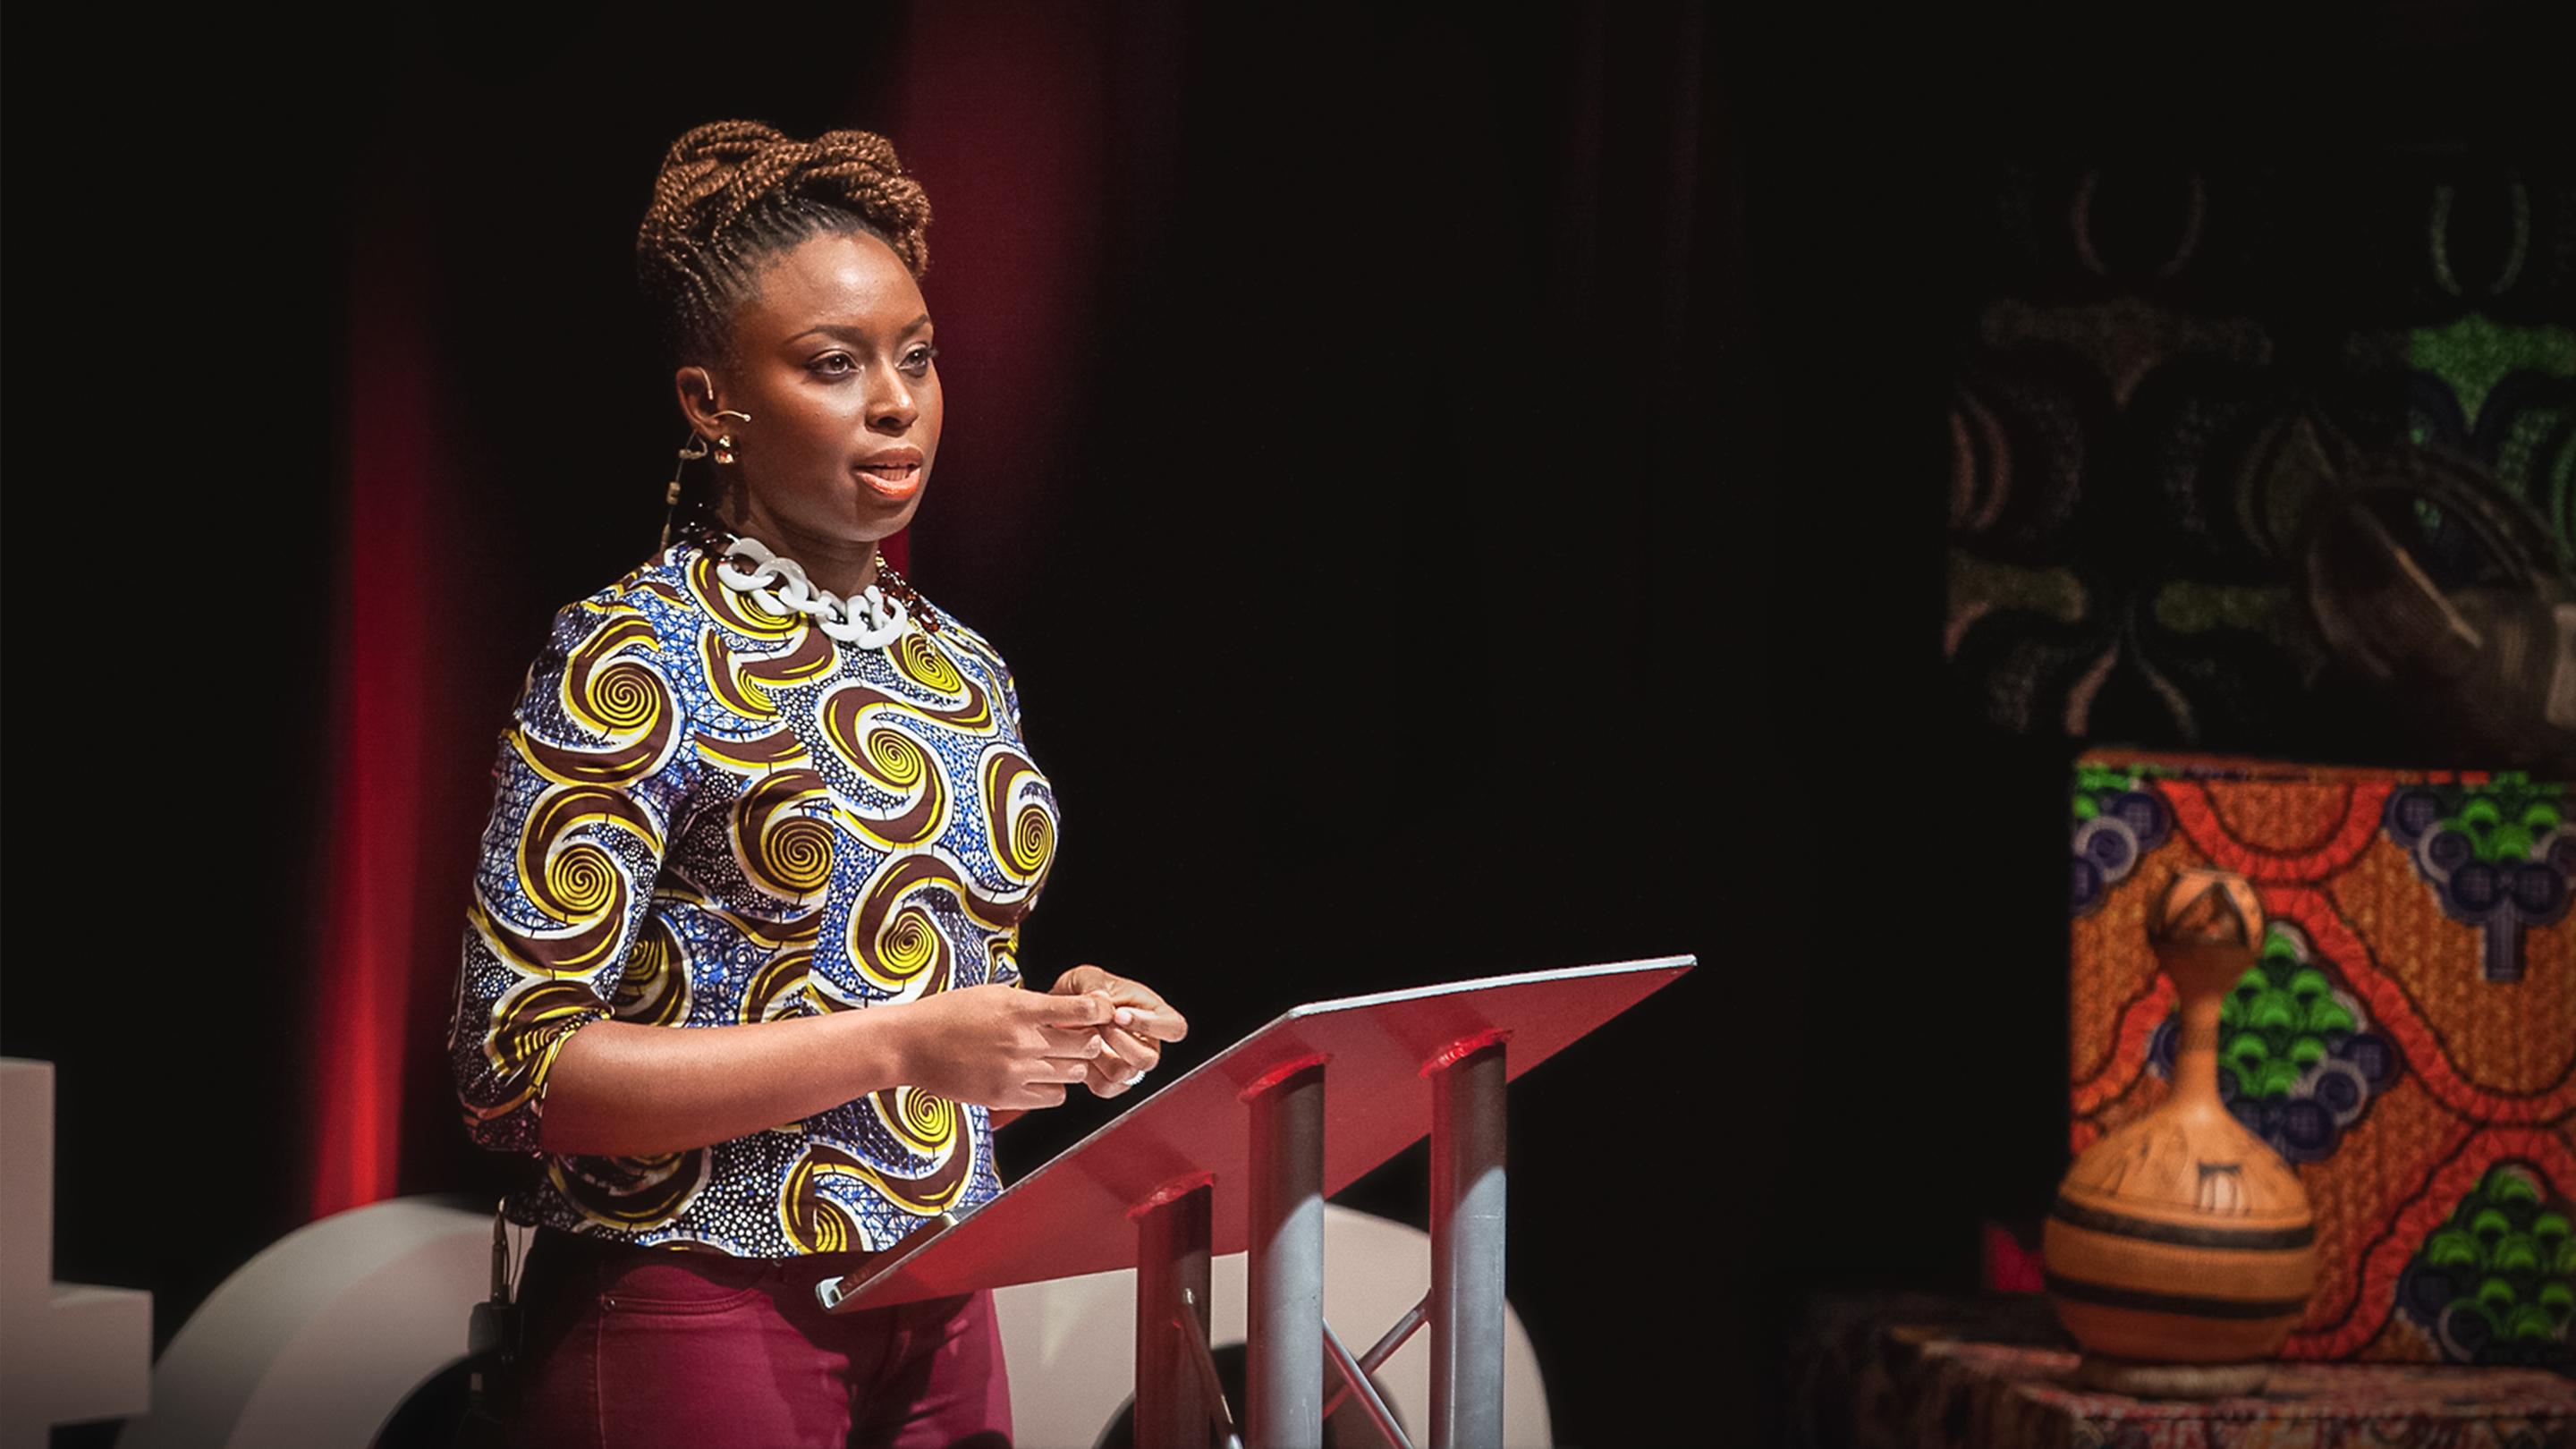 チママンダ・ンゴズィ・アディーチェ: 男も女もみんなフェミニストじゃなきゃ | TED Talk